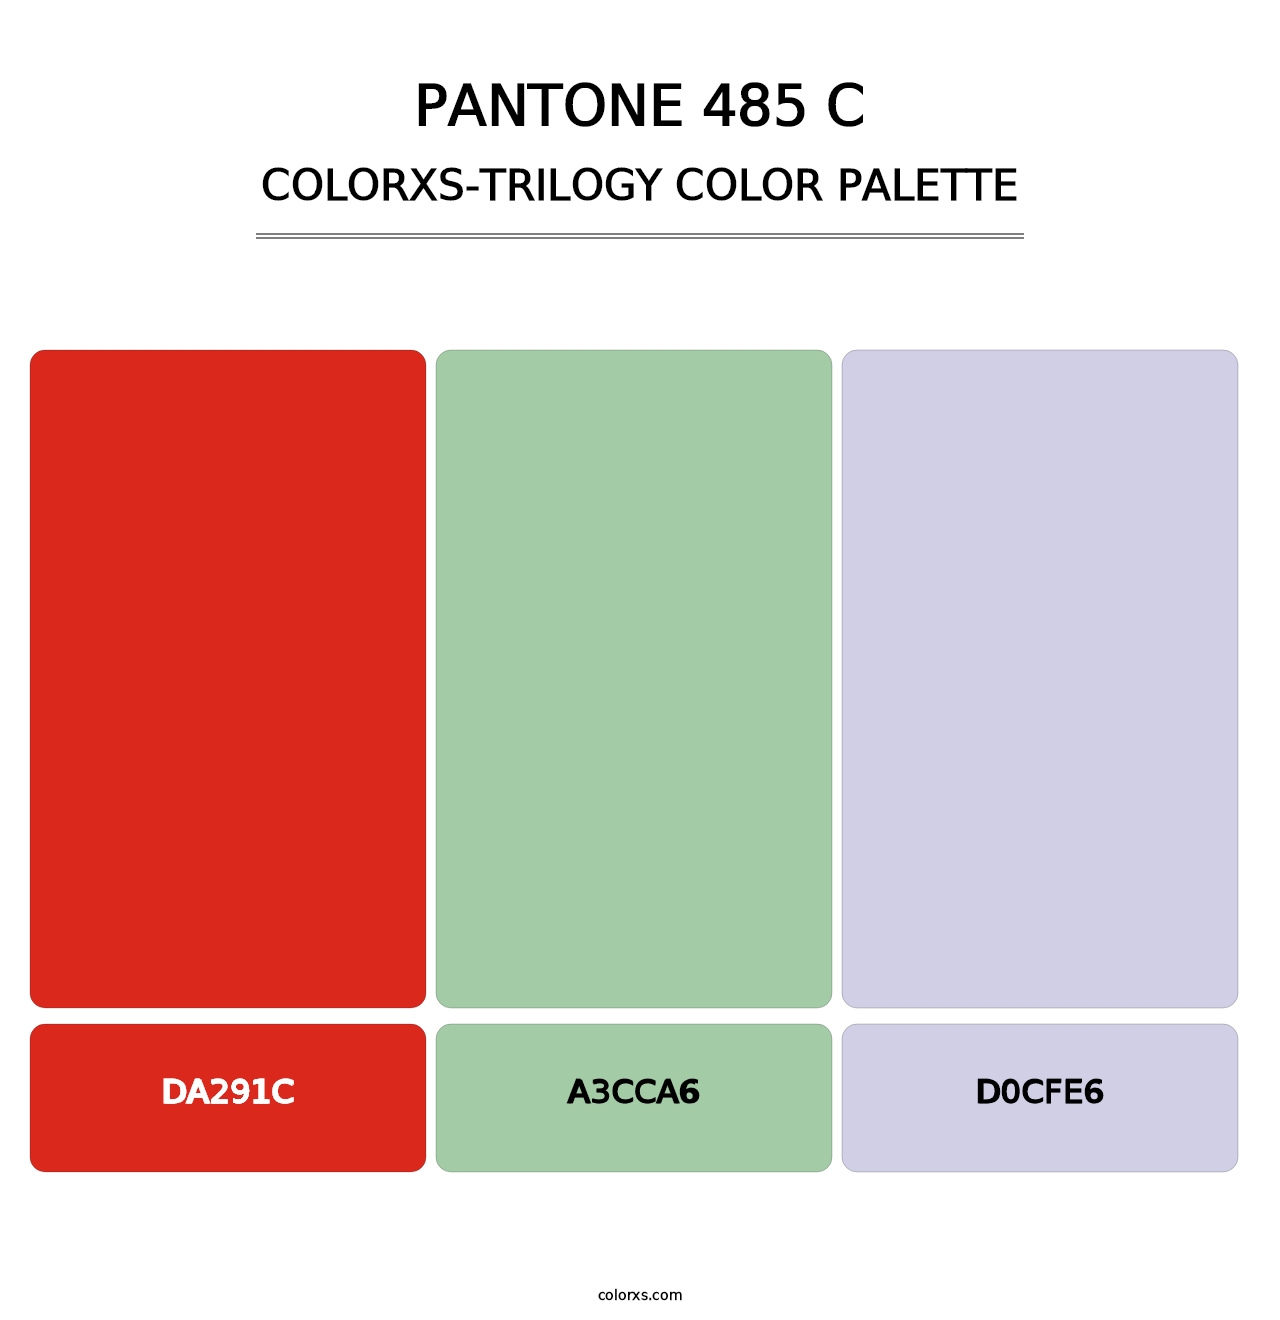 PANTONE 485 C - Colorxs Trilogy Palette